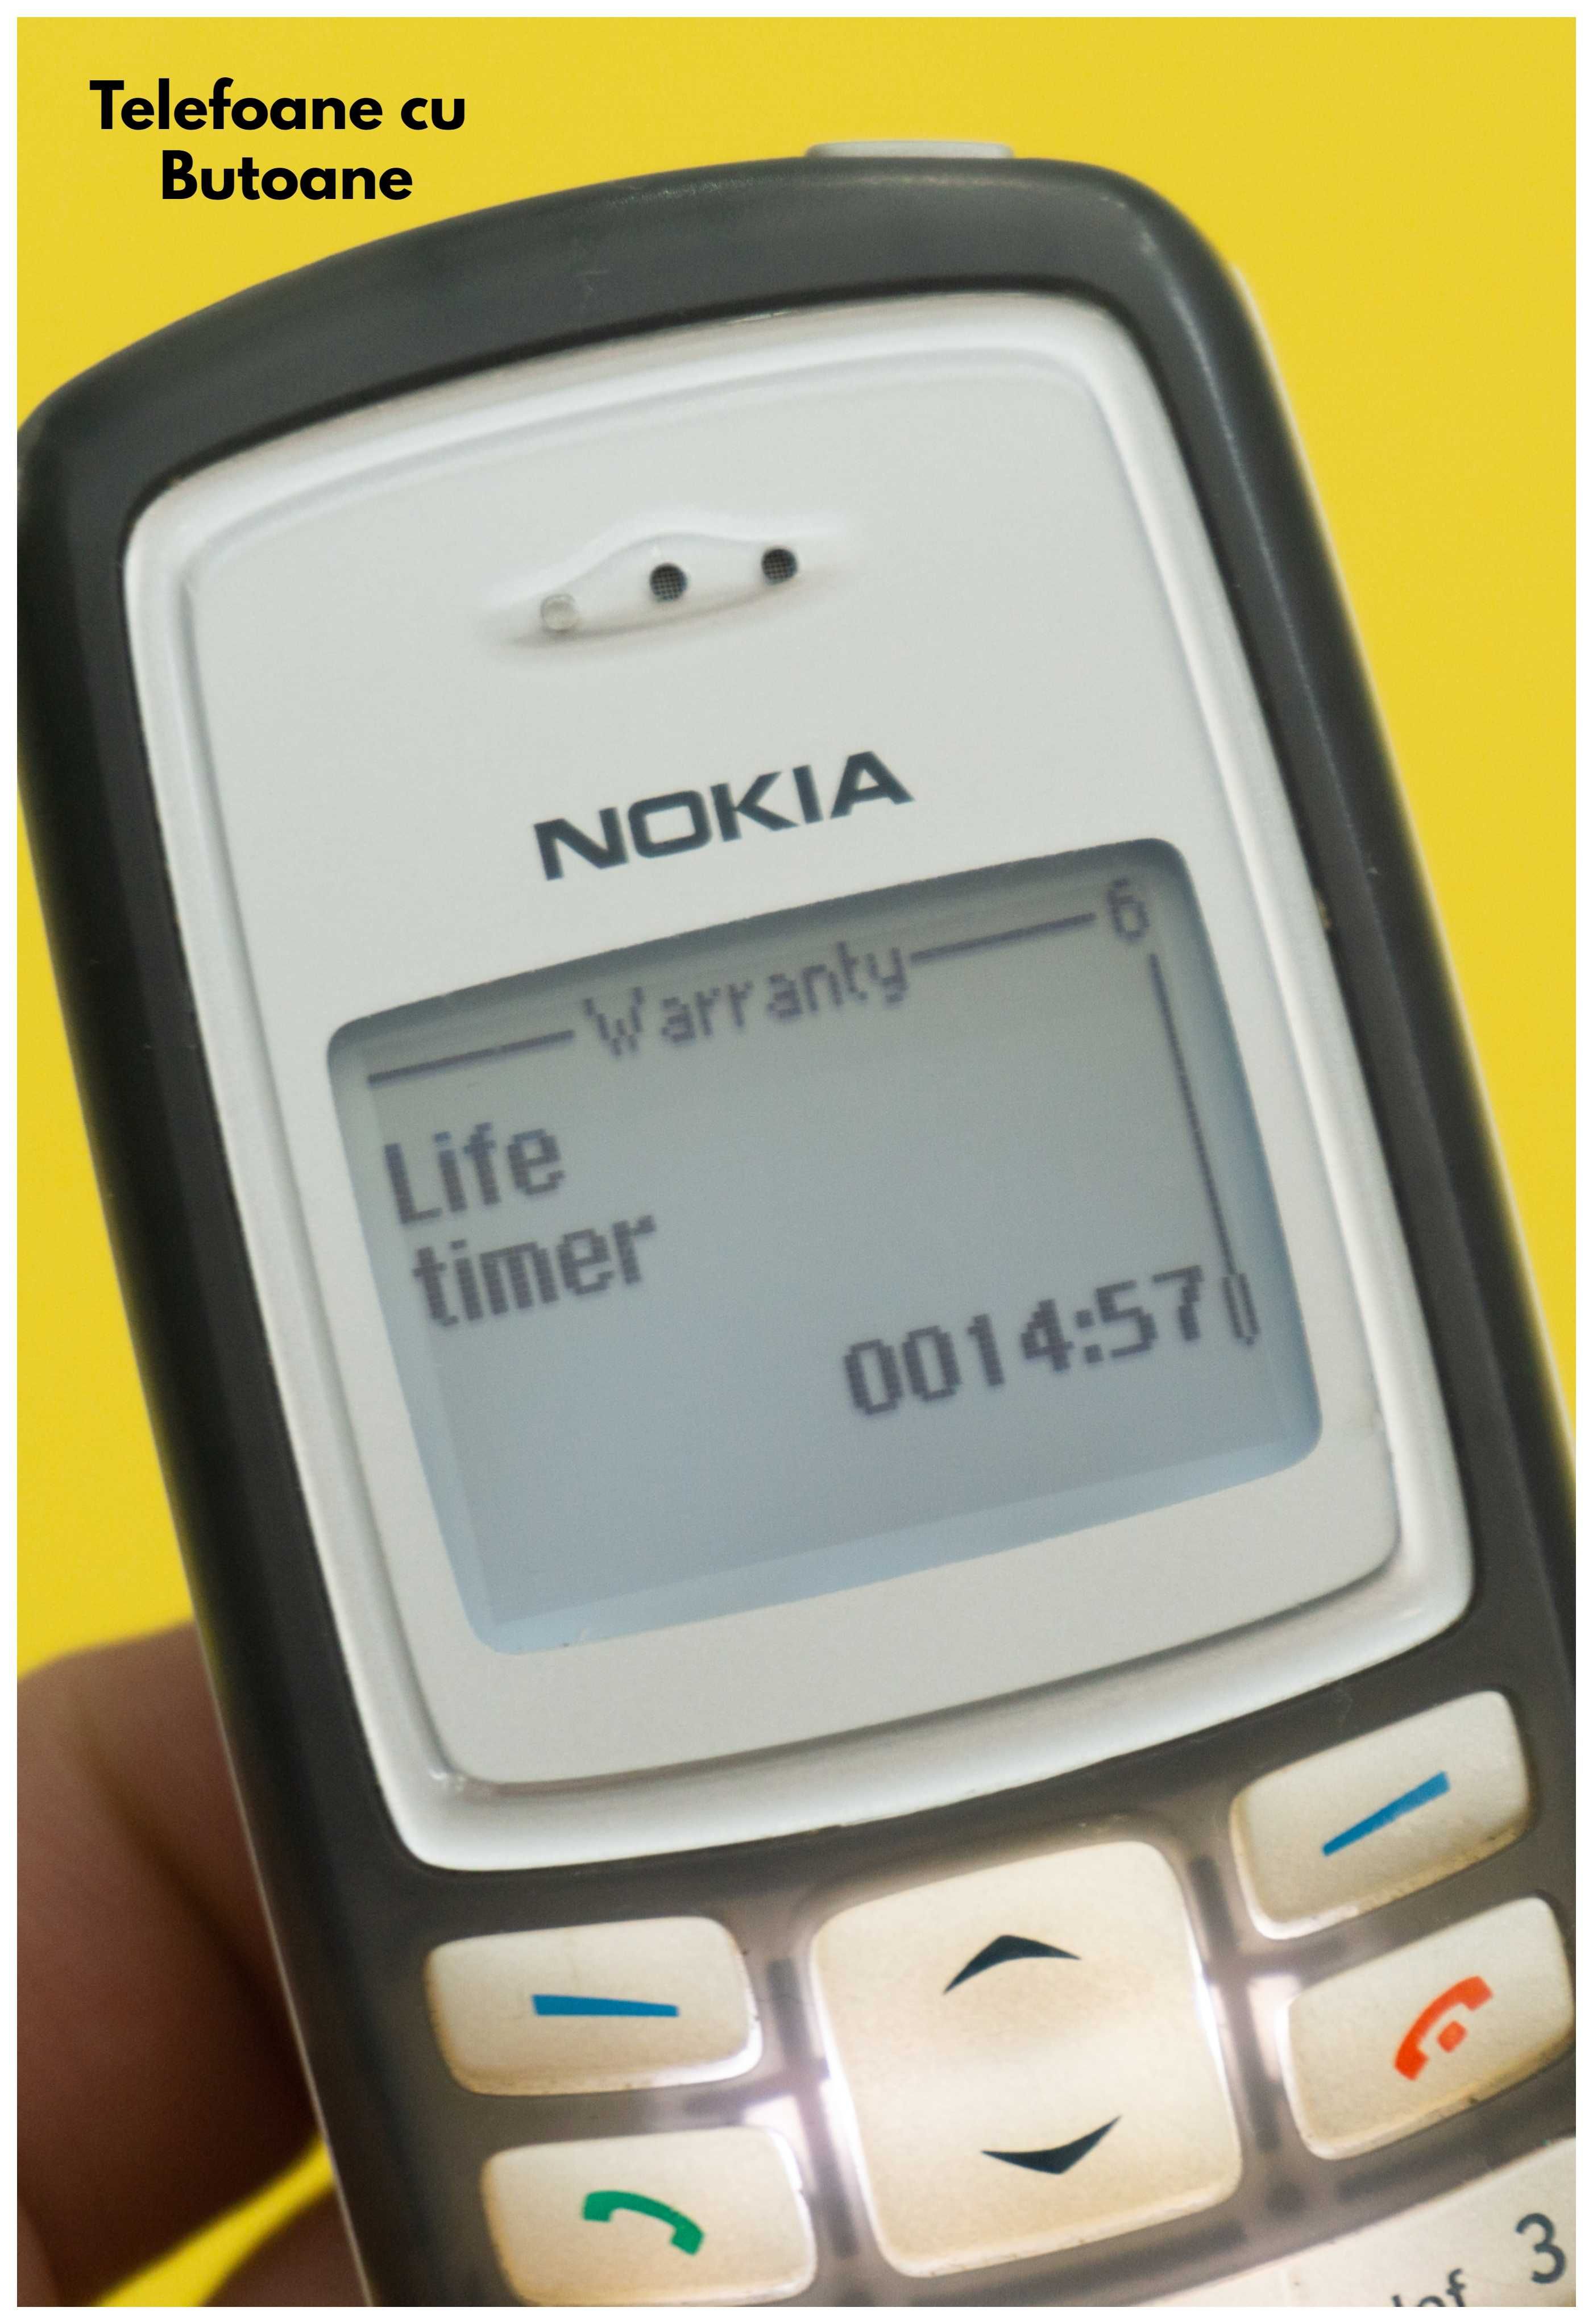 Nokia 2100 Classic ( Nokia 6700 Nokia 3310 Motorola Nokia 3510i )